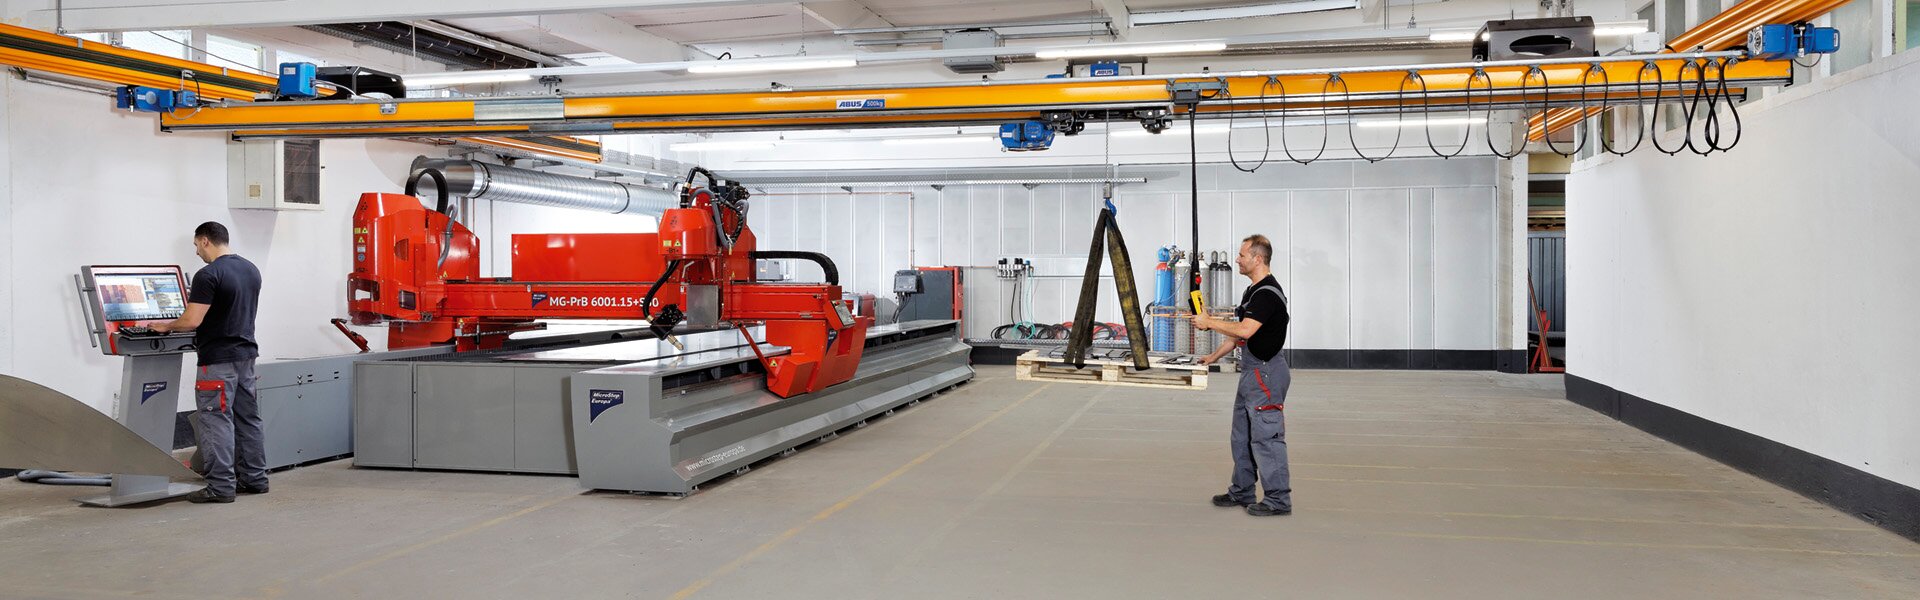 ABUS double girder crane at the company STA-Schalttechnische-Anlagen in Hamm, Germany